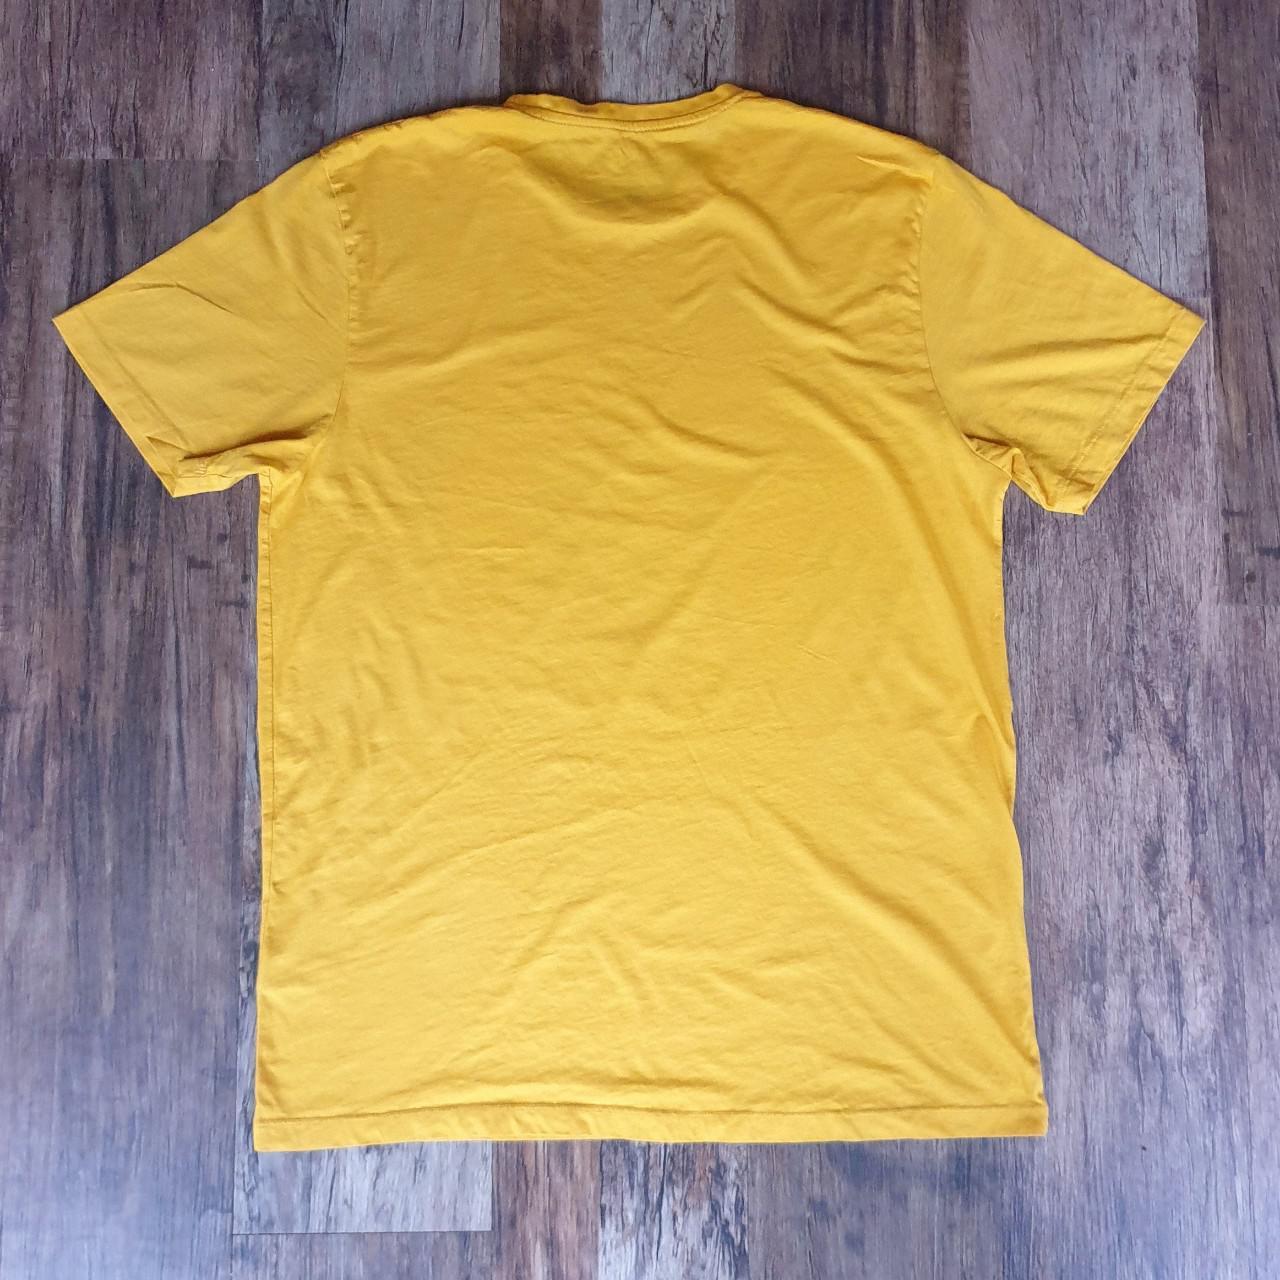 Primark Men's Yellow T-shirt | Depop